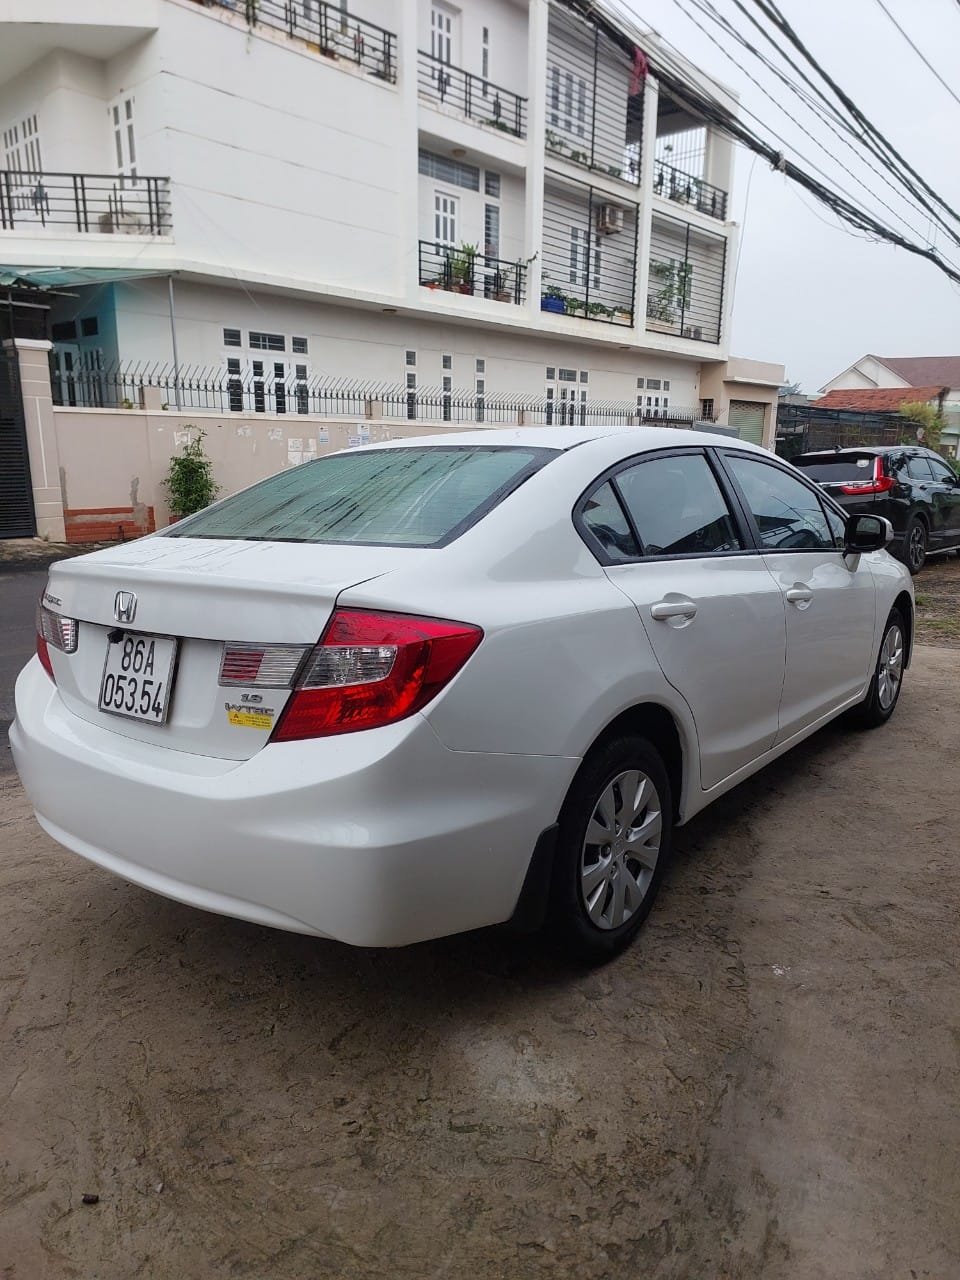 Cần bán xe Honda Civic 2014 số tự động bản Full 20L cọp  Hà Phượng   MBN7493  0906913832